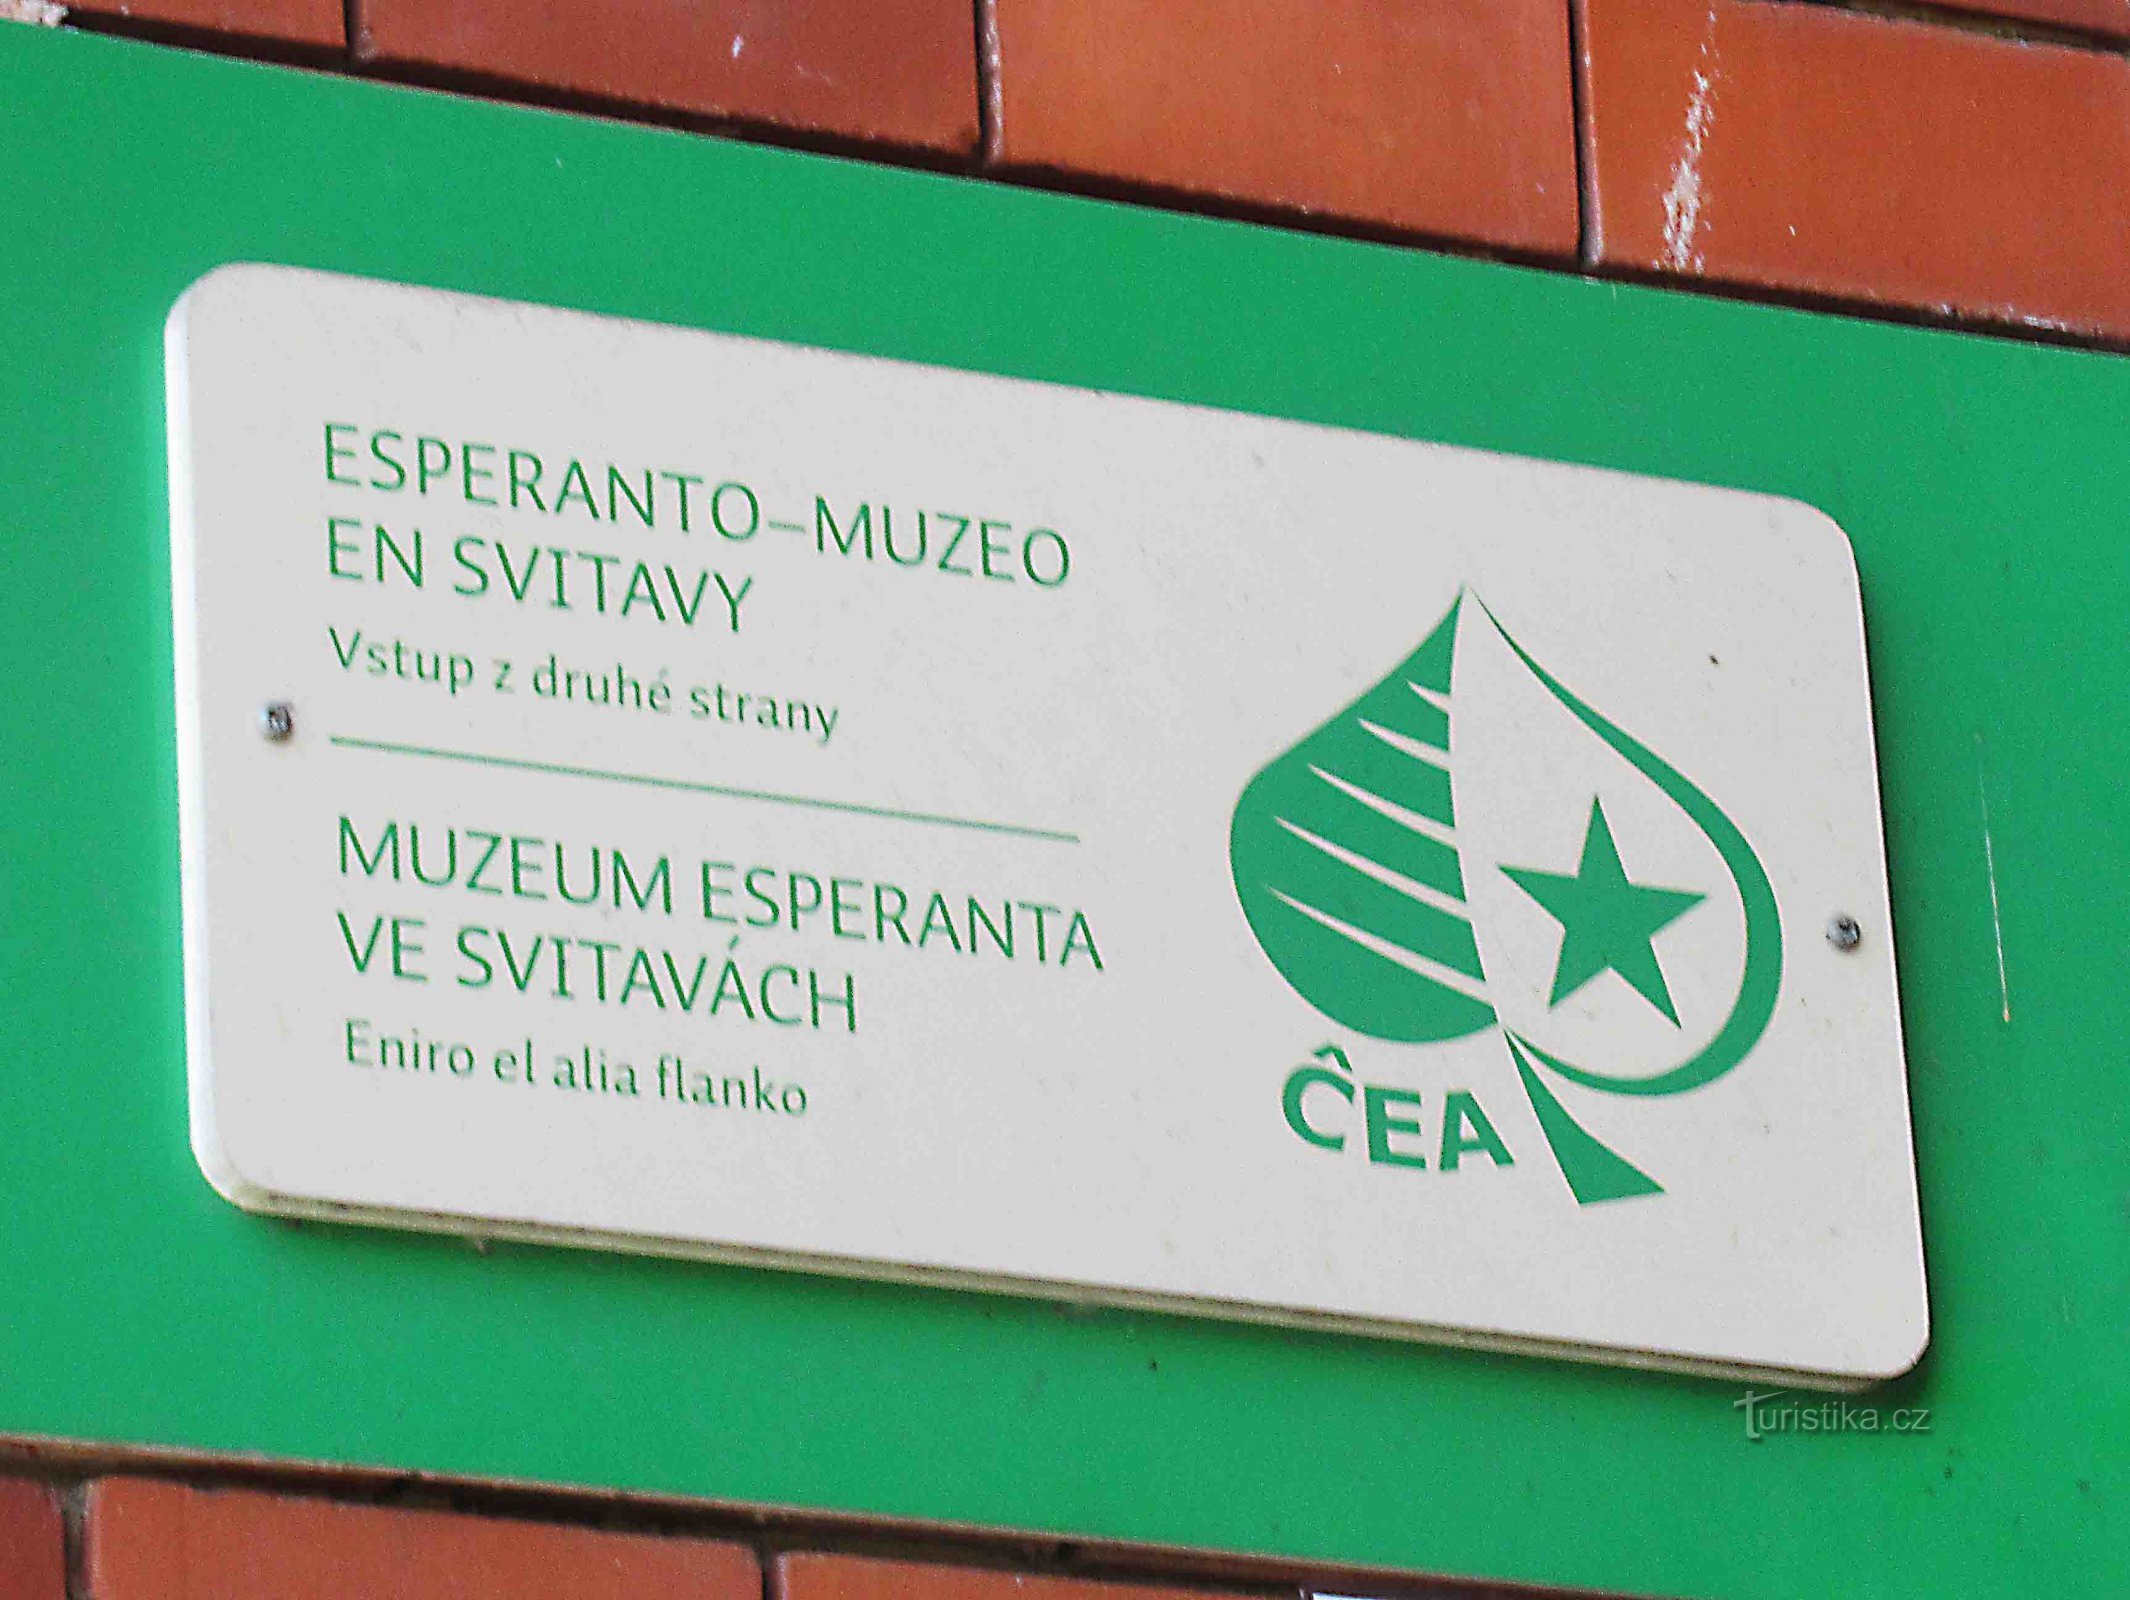 Muzeul Esperanto din Svitava